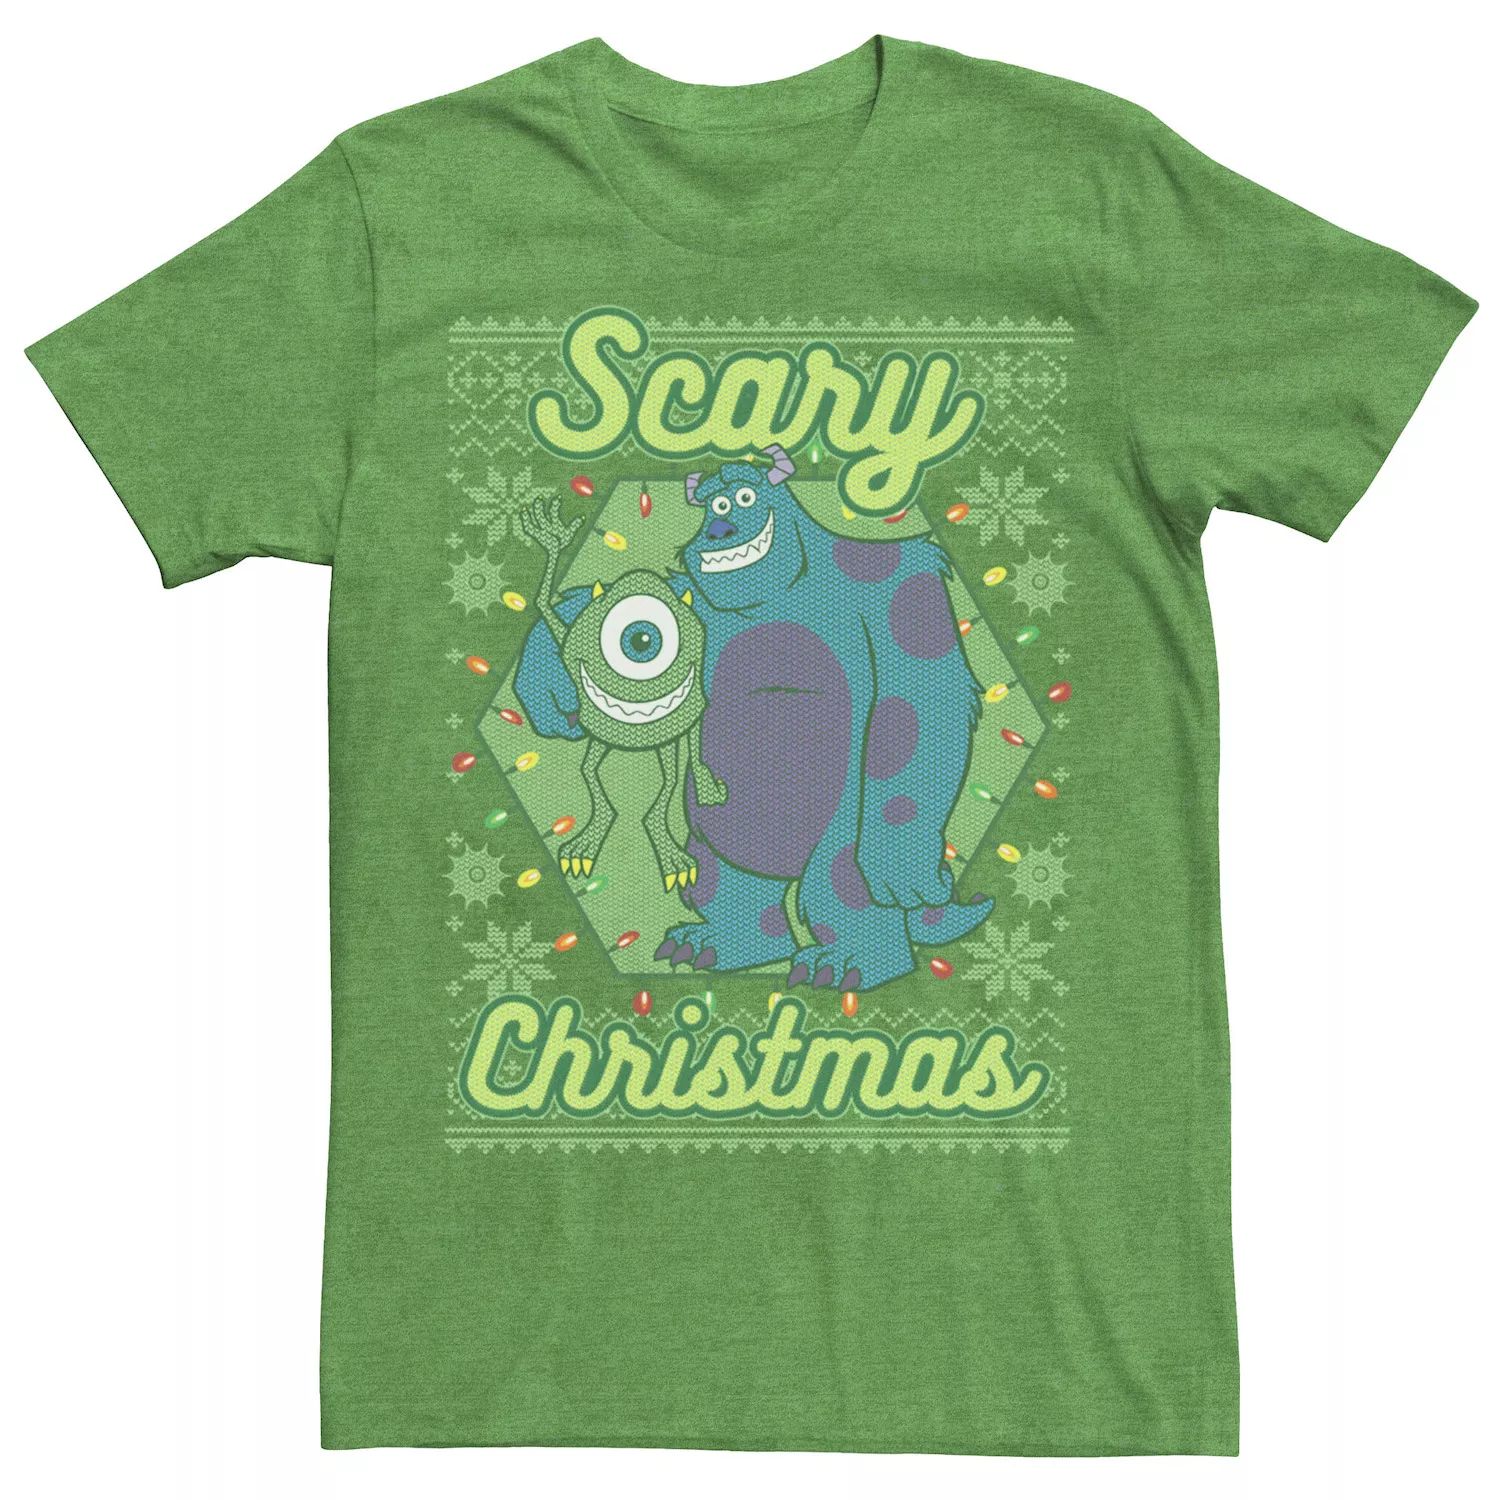 Мужская страшная рождественская футболка Disney/Pixar Monsters University Disney / Pixar